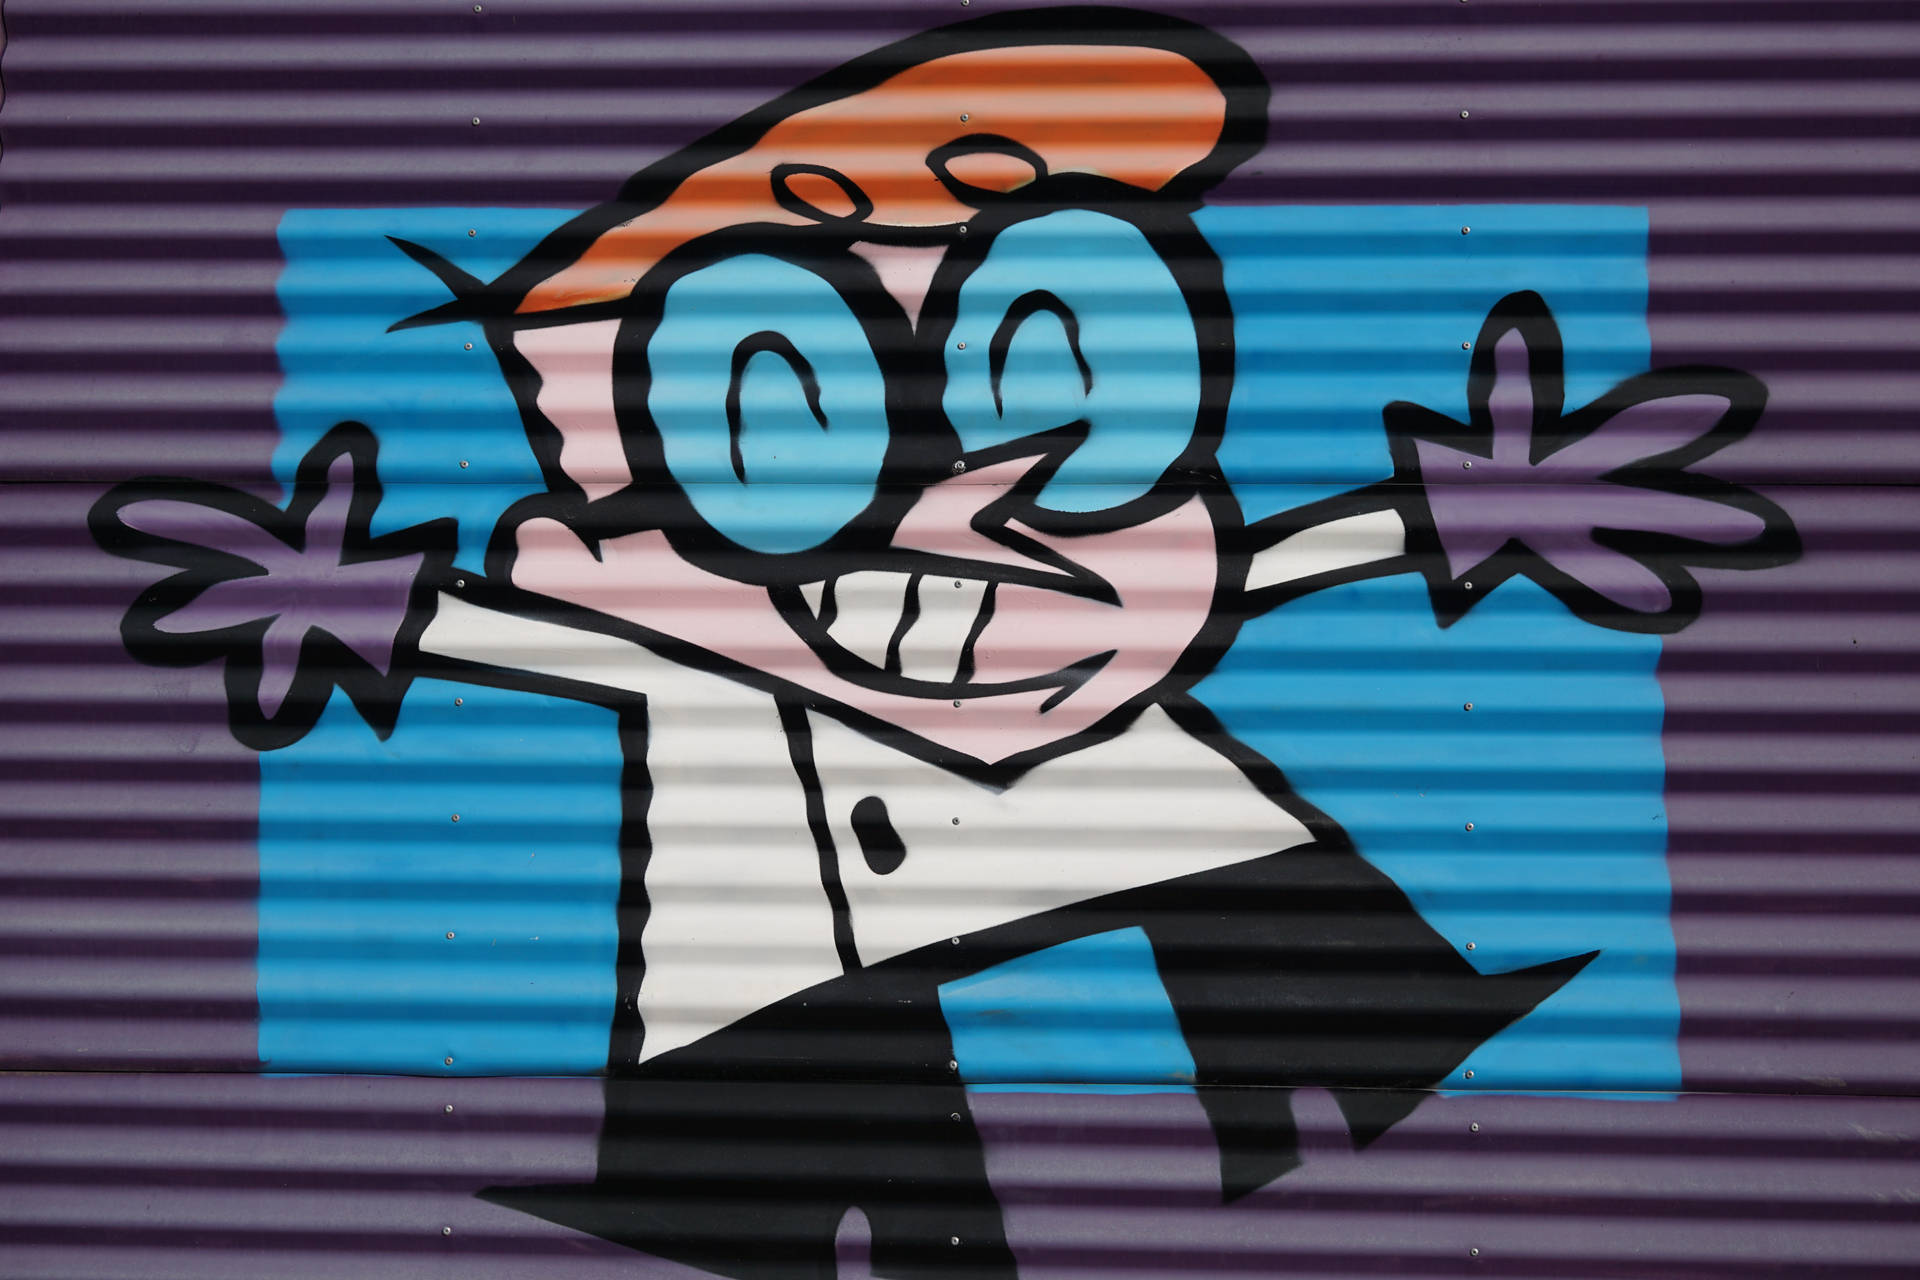 Hd Art Of Dexter Cartoon Network